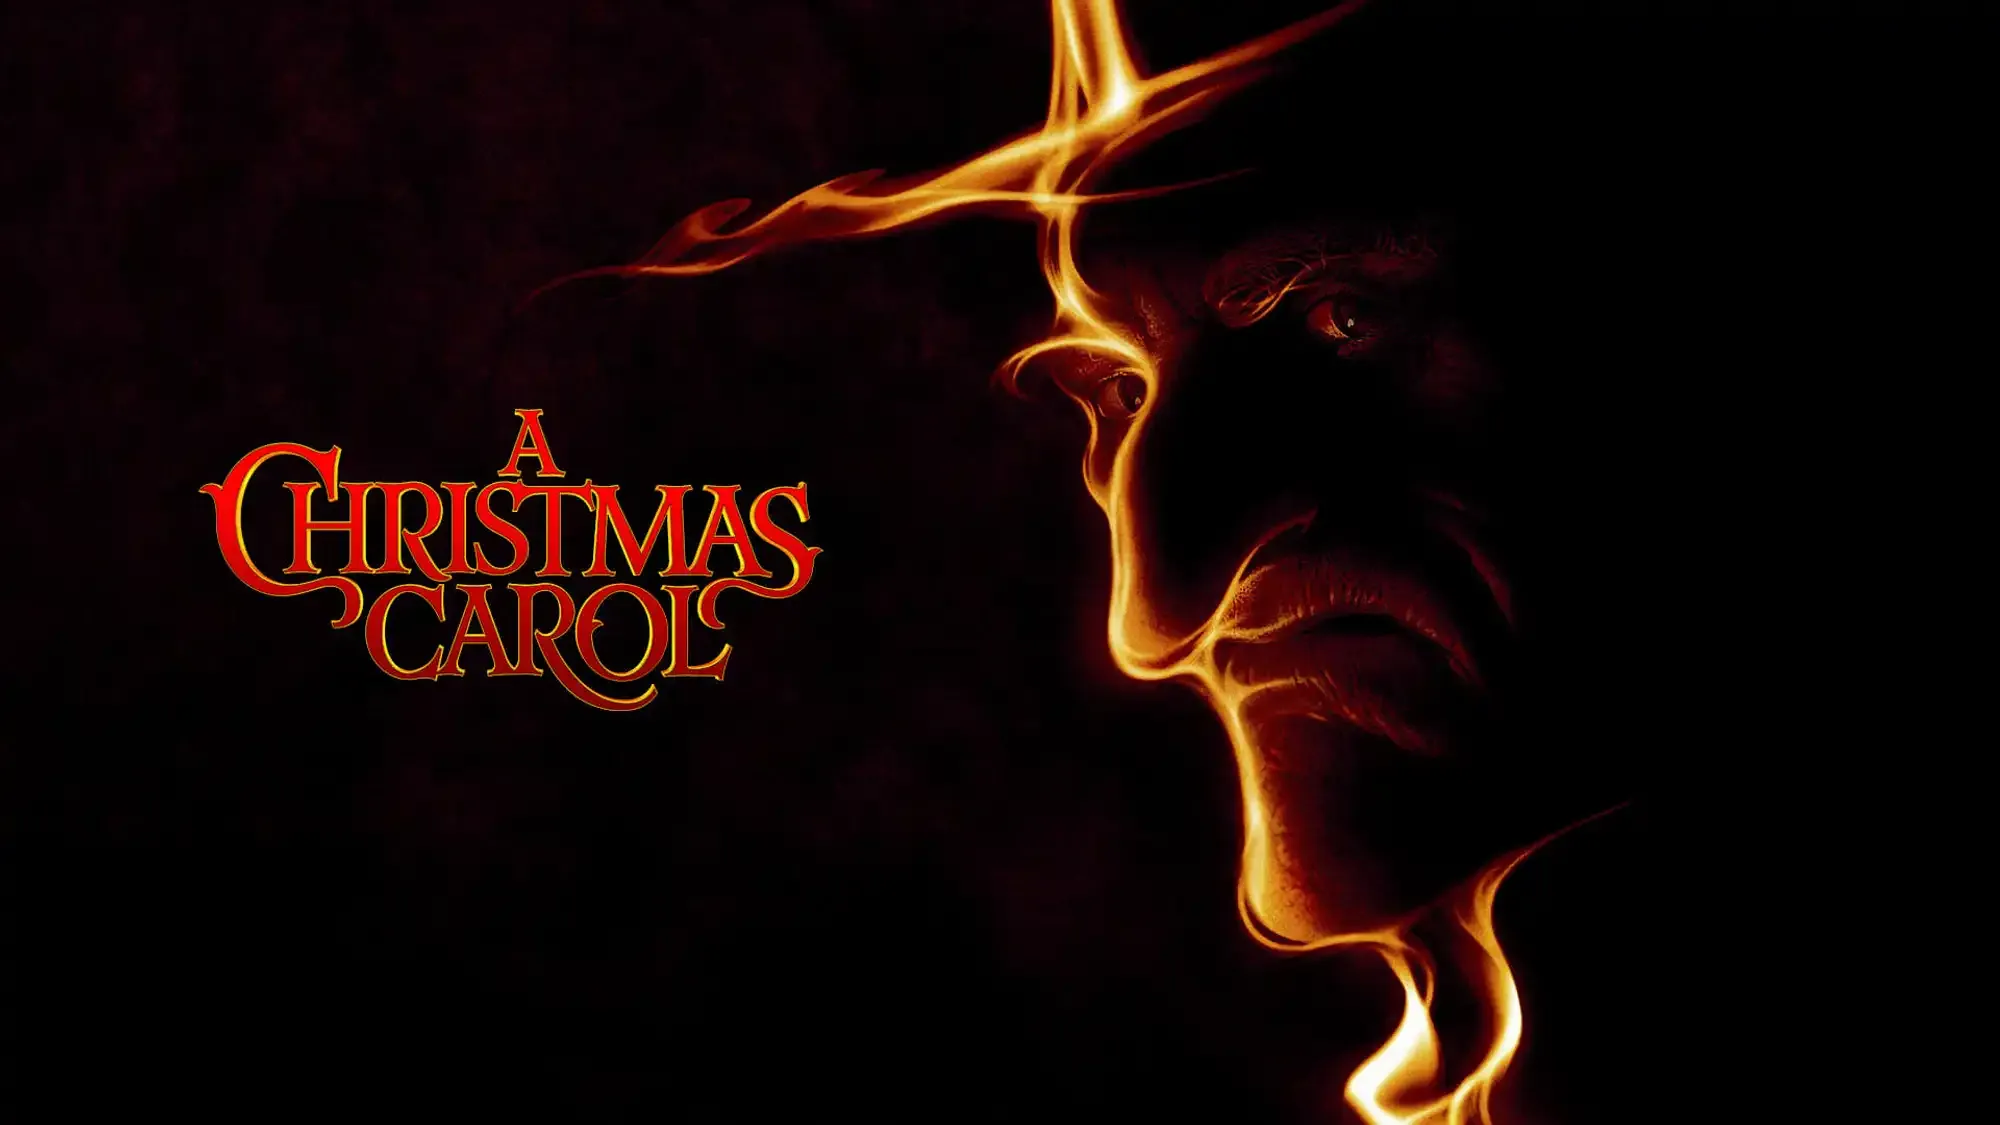 A Christmas Carol movie review